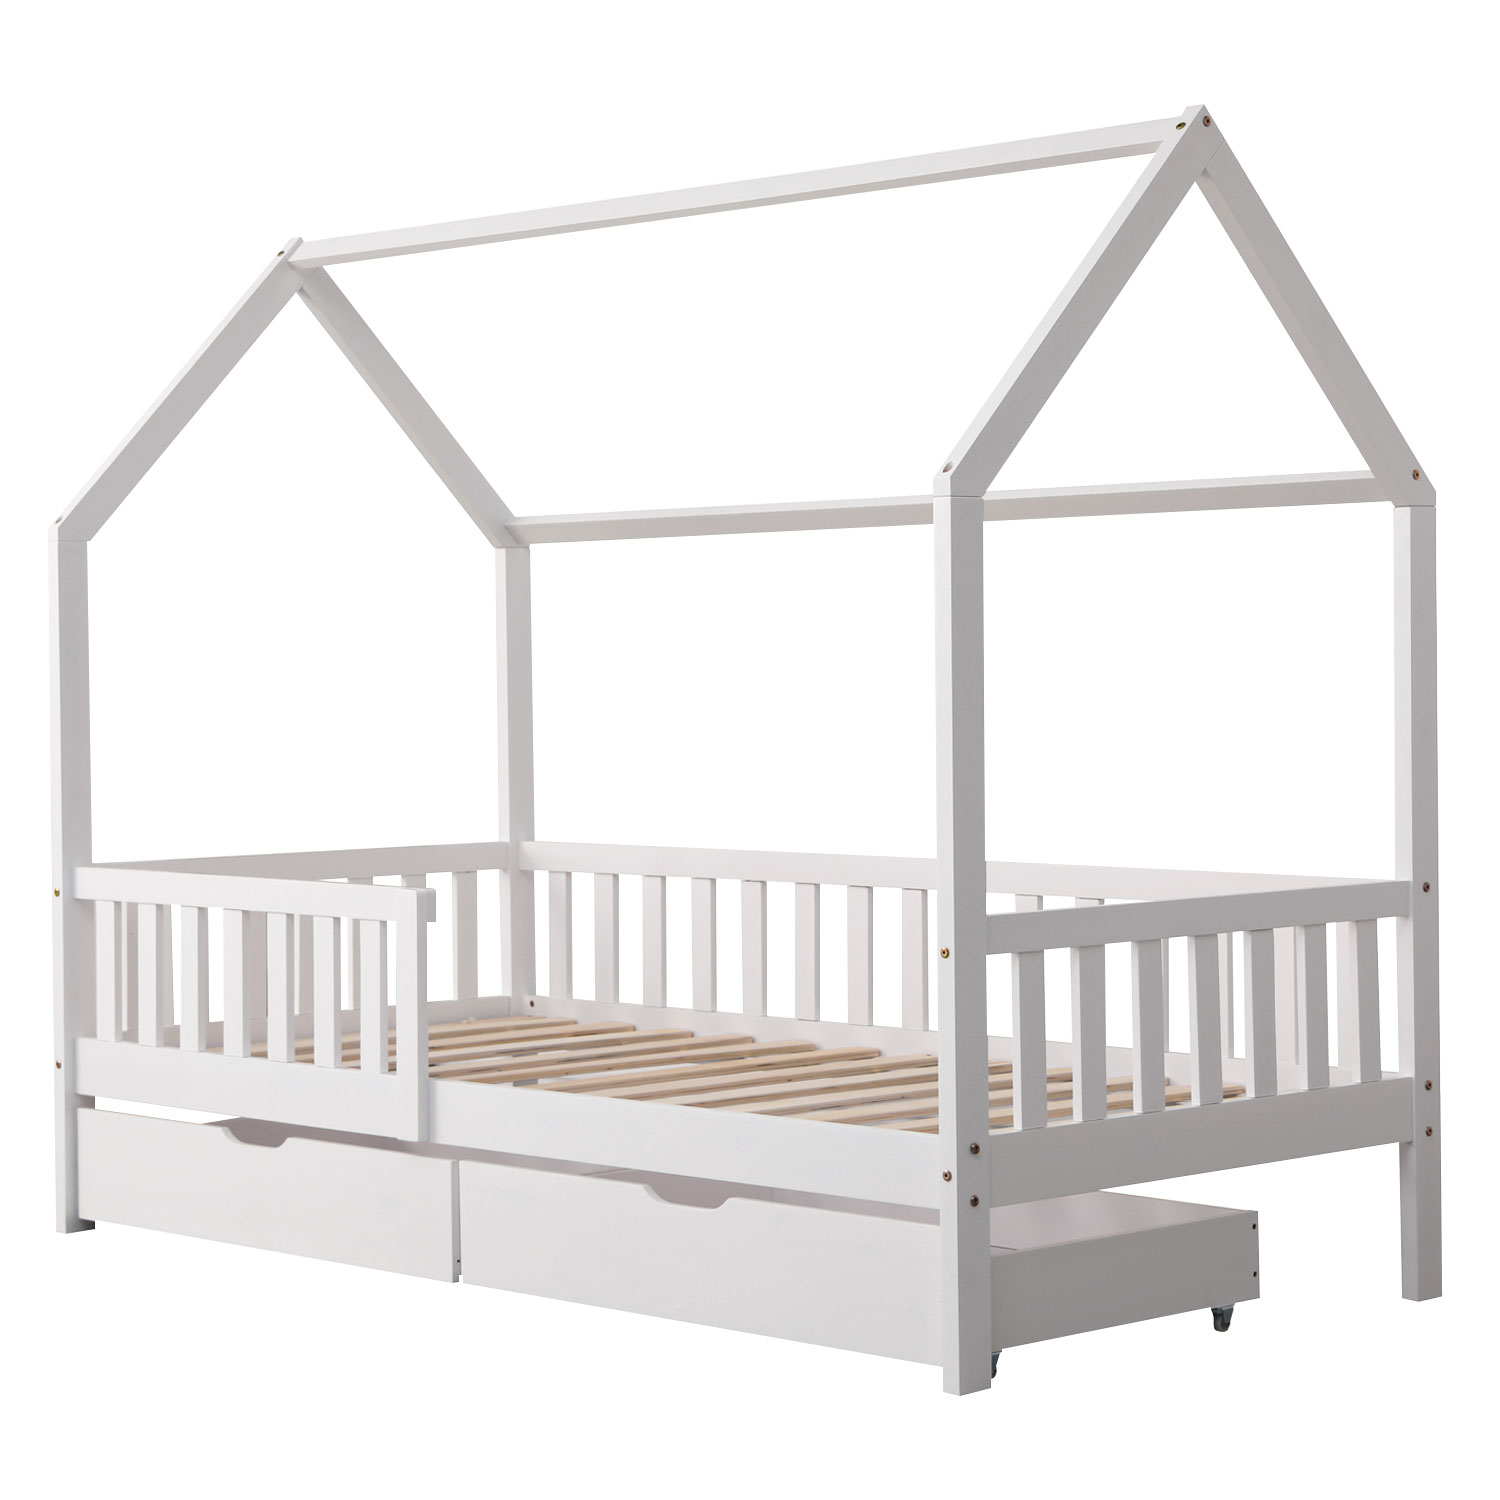 Lit cabane pour enfant avec tiroirs 190x90cm blanc